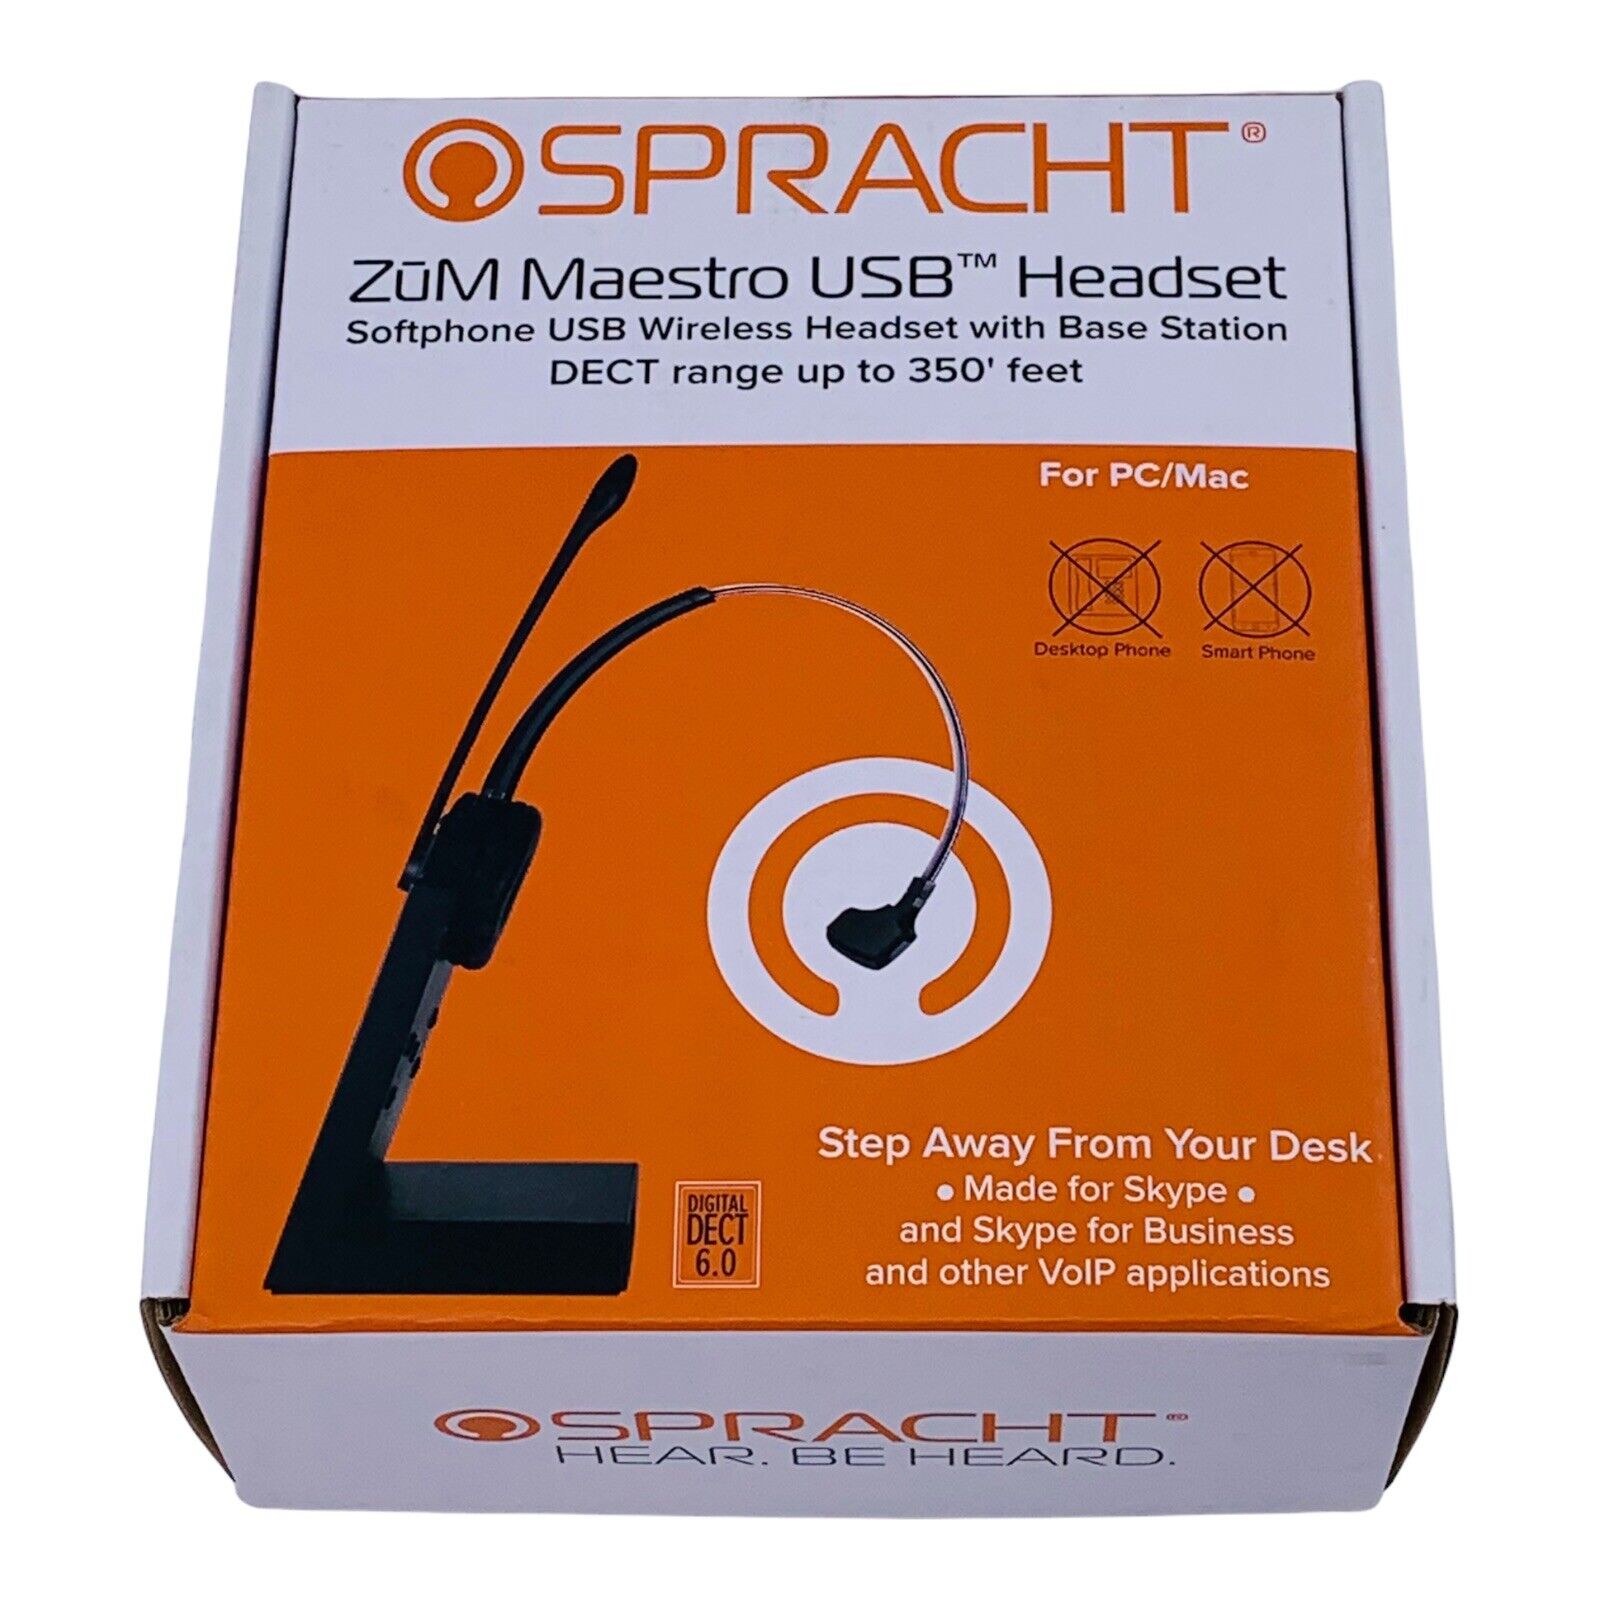 Spracht ZUM Maestro USB Headset w/ Base Station for PC/Mac, Black, HS-3010